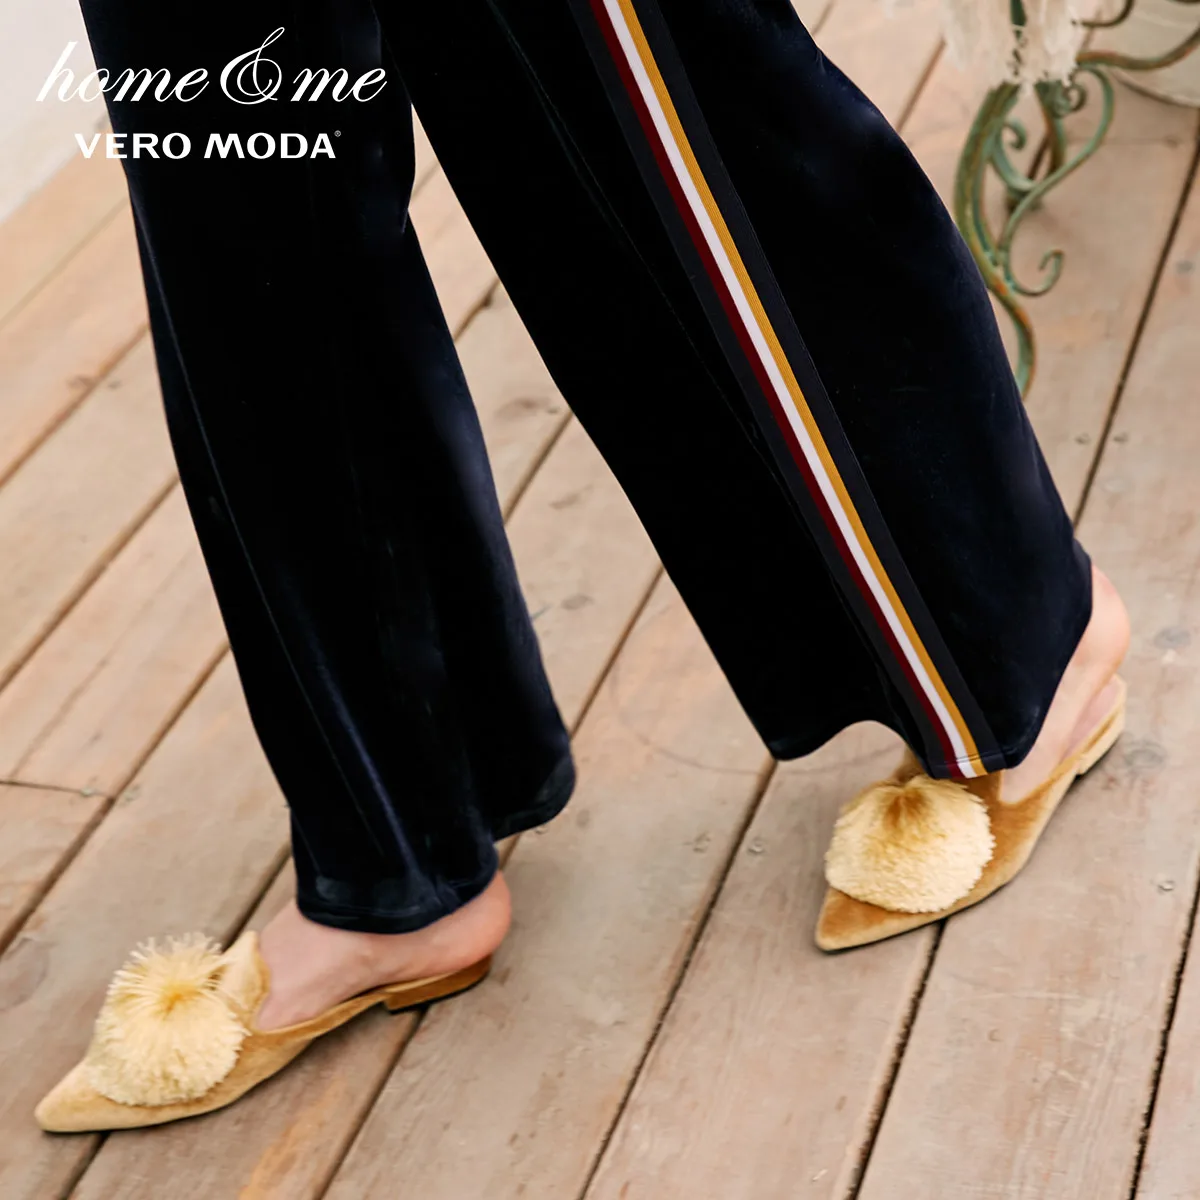 Vero Moda новые спортивные штаны женские женские полосатые бархатные широкие повседневные брюки | 3184R2501